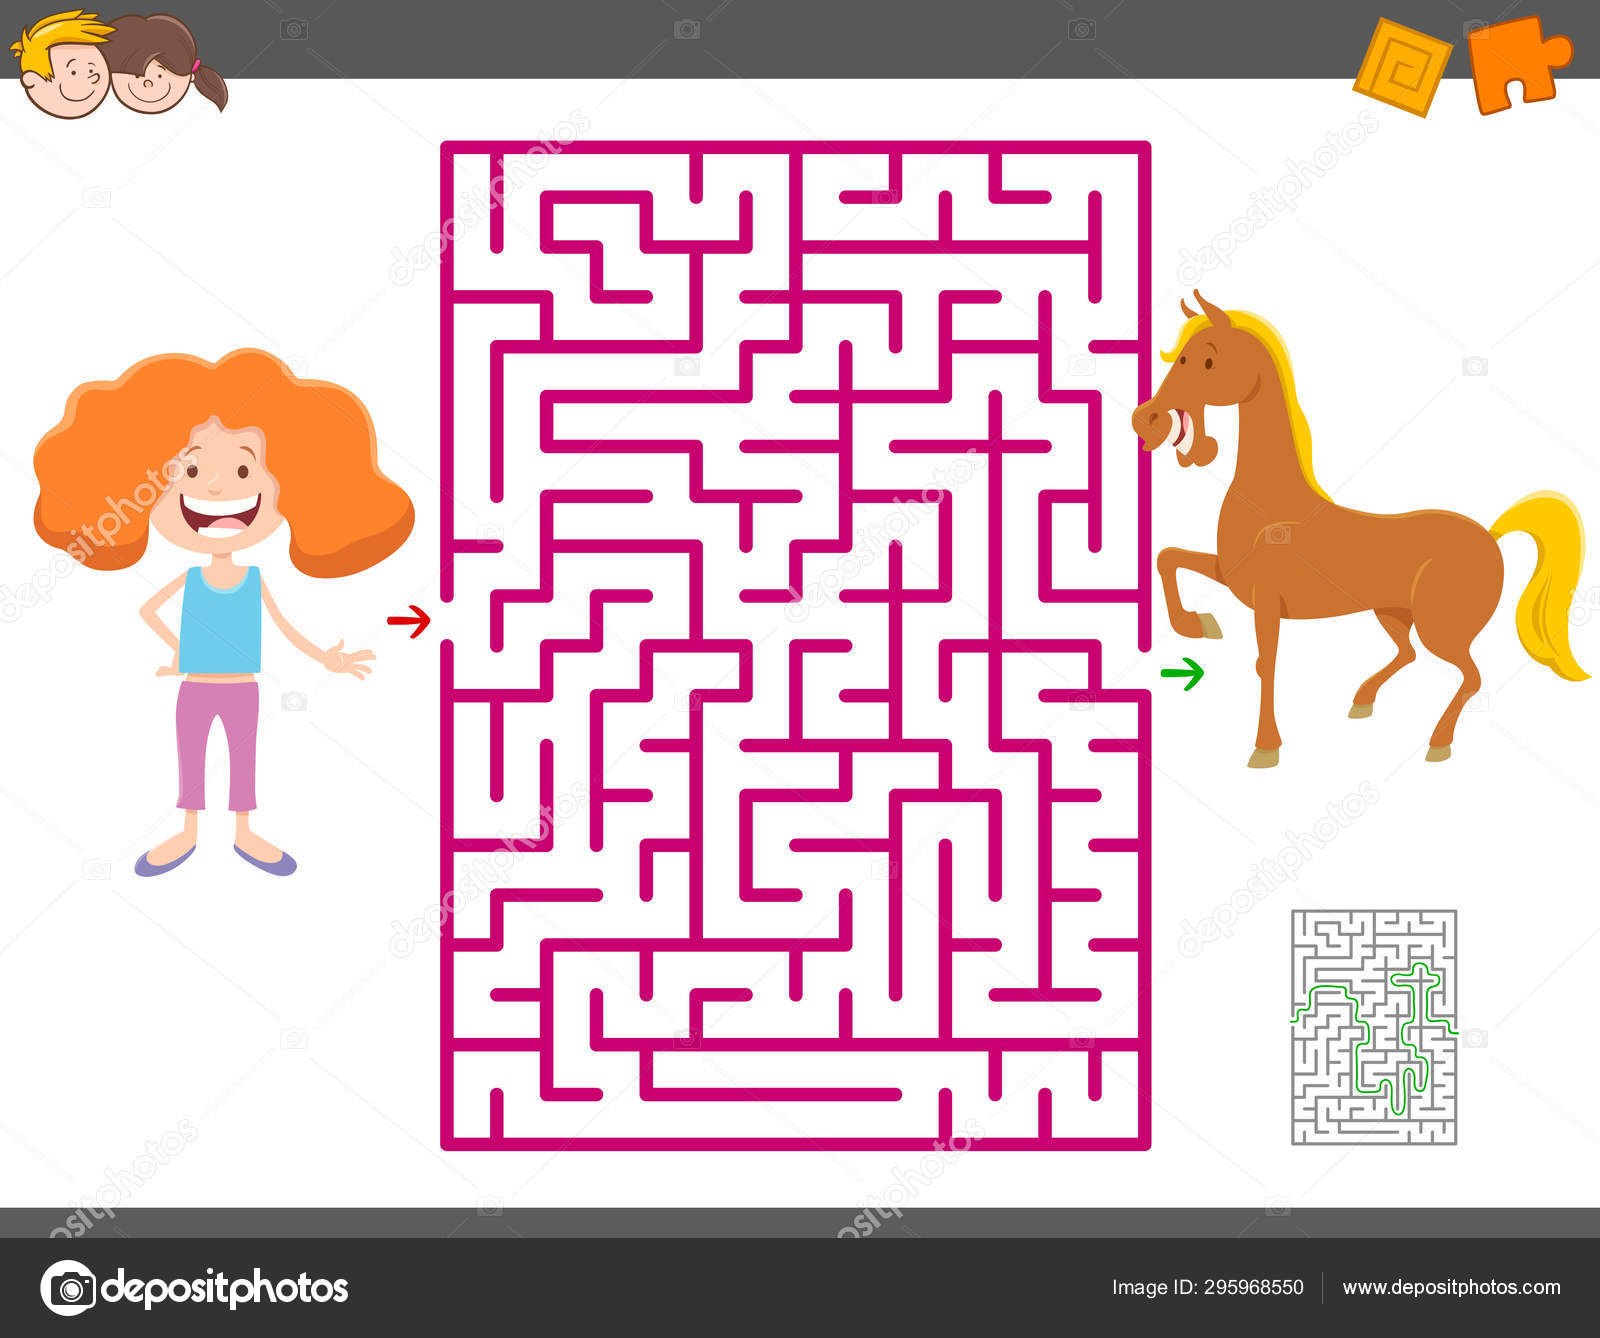 jeu éducatif de labyrinthe avec une fille de dessin animé et un